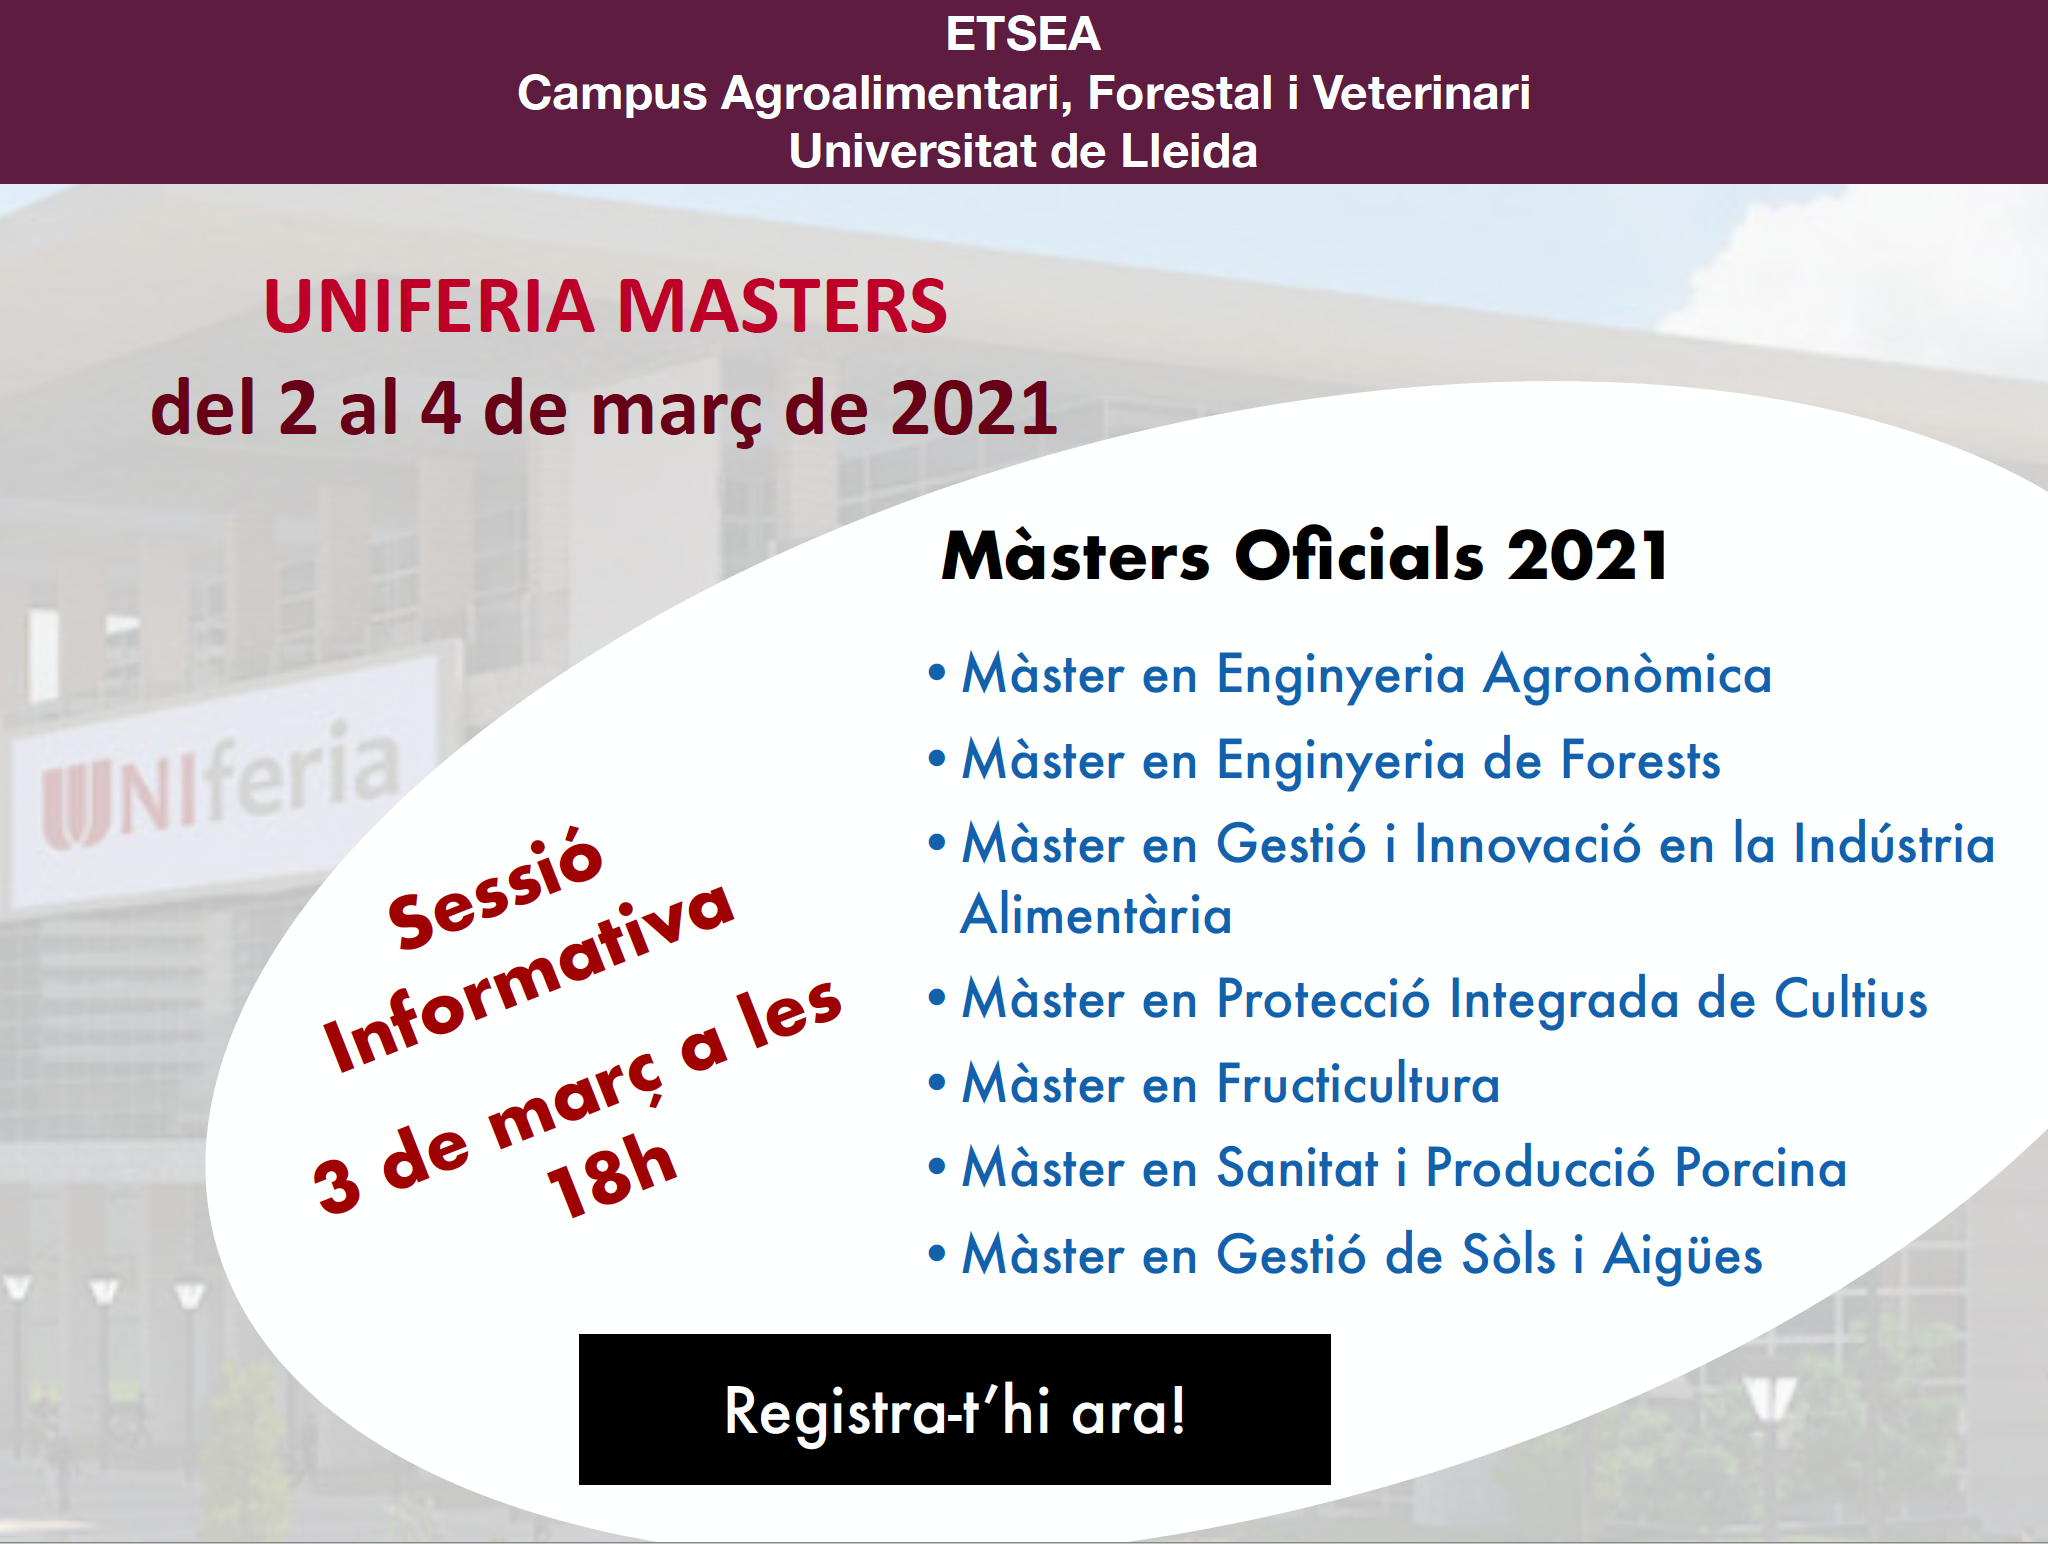 Sessió informativa de Màsters Agraris-Forestals-Alimentaris a la fira virtual UNIFERIA